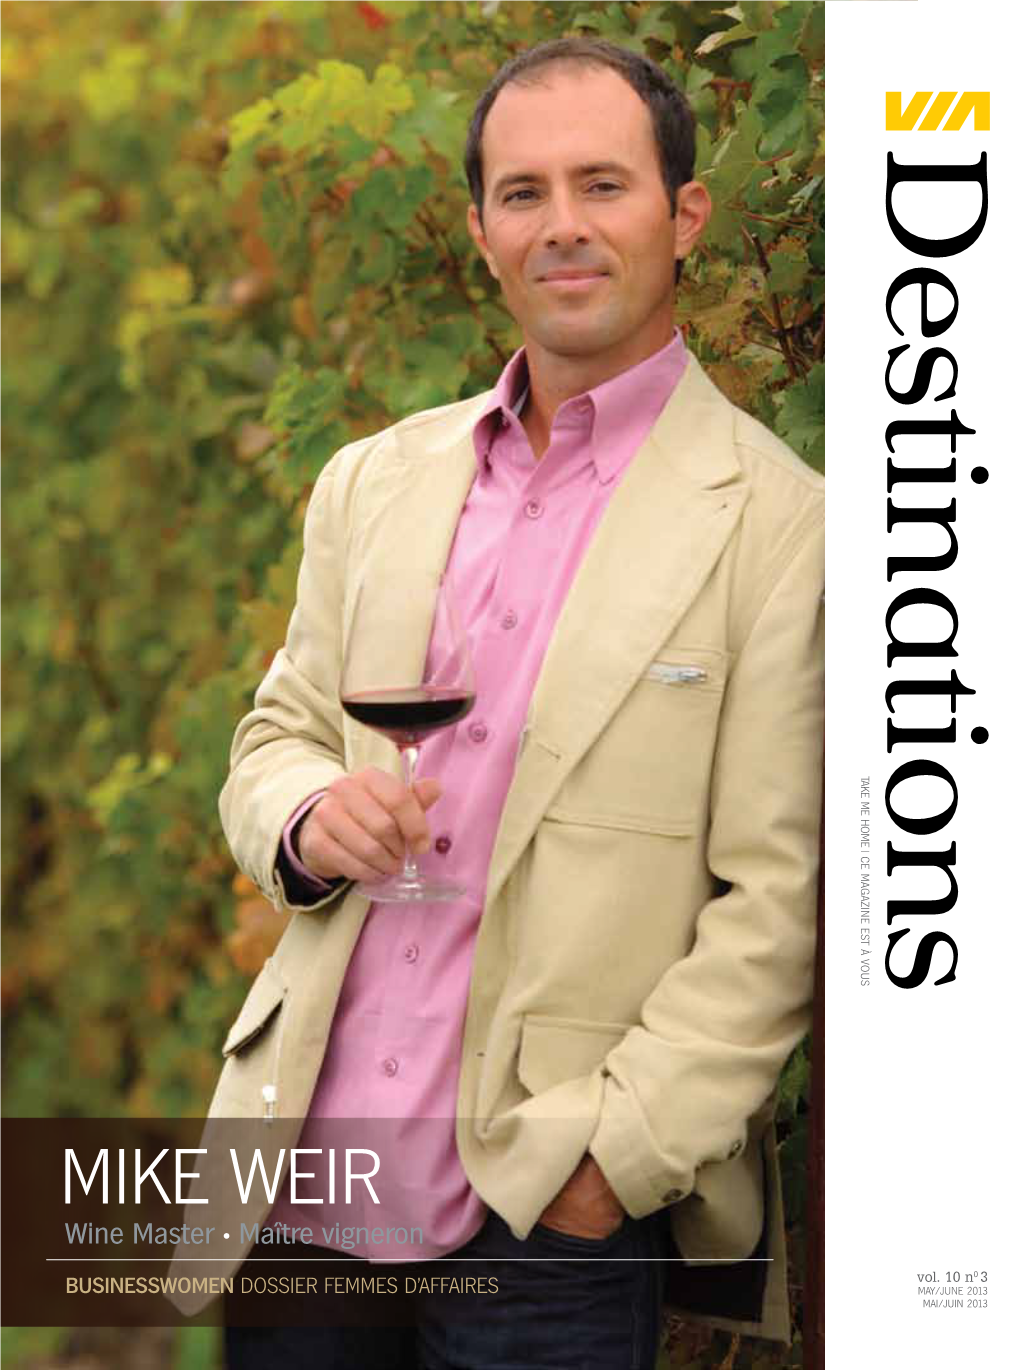 Mike Weir Wine Master • Maître Vigneron